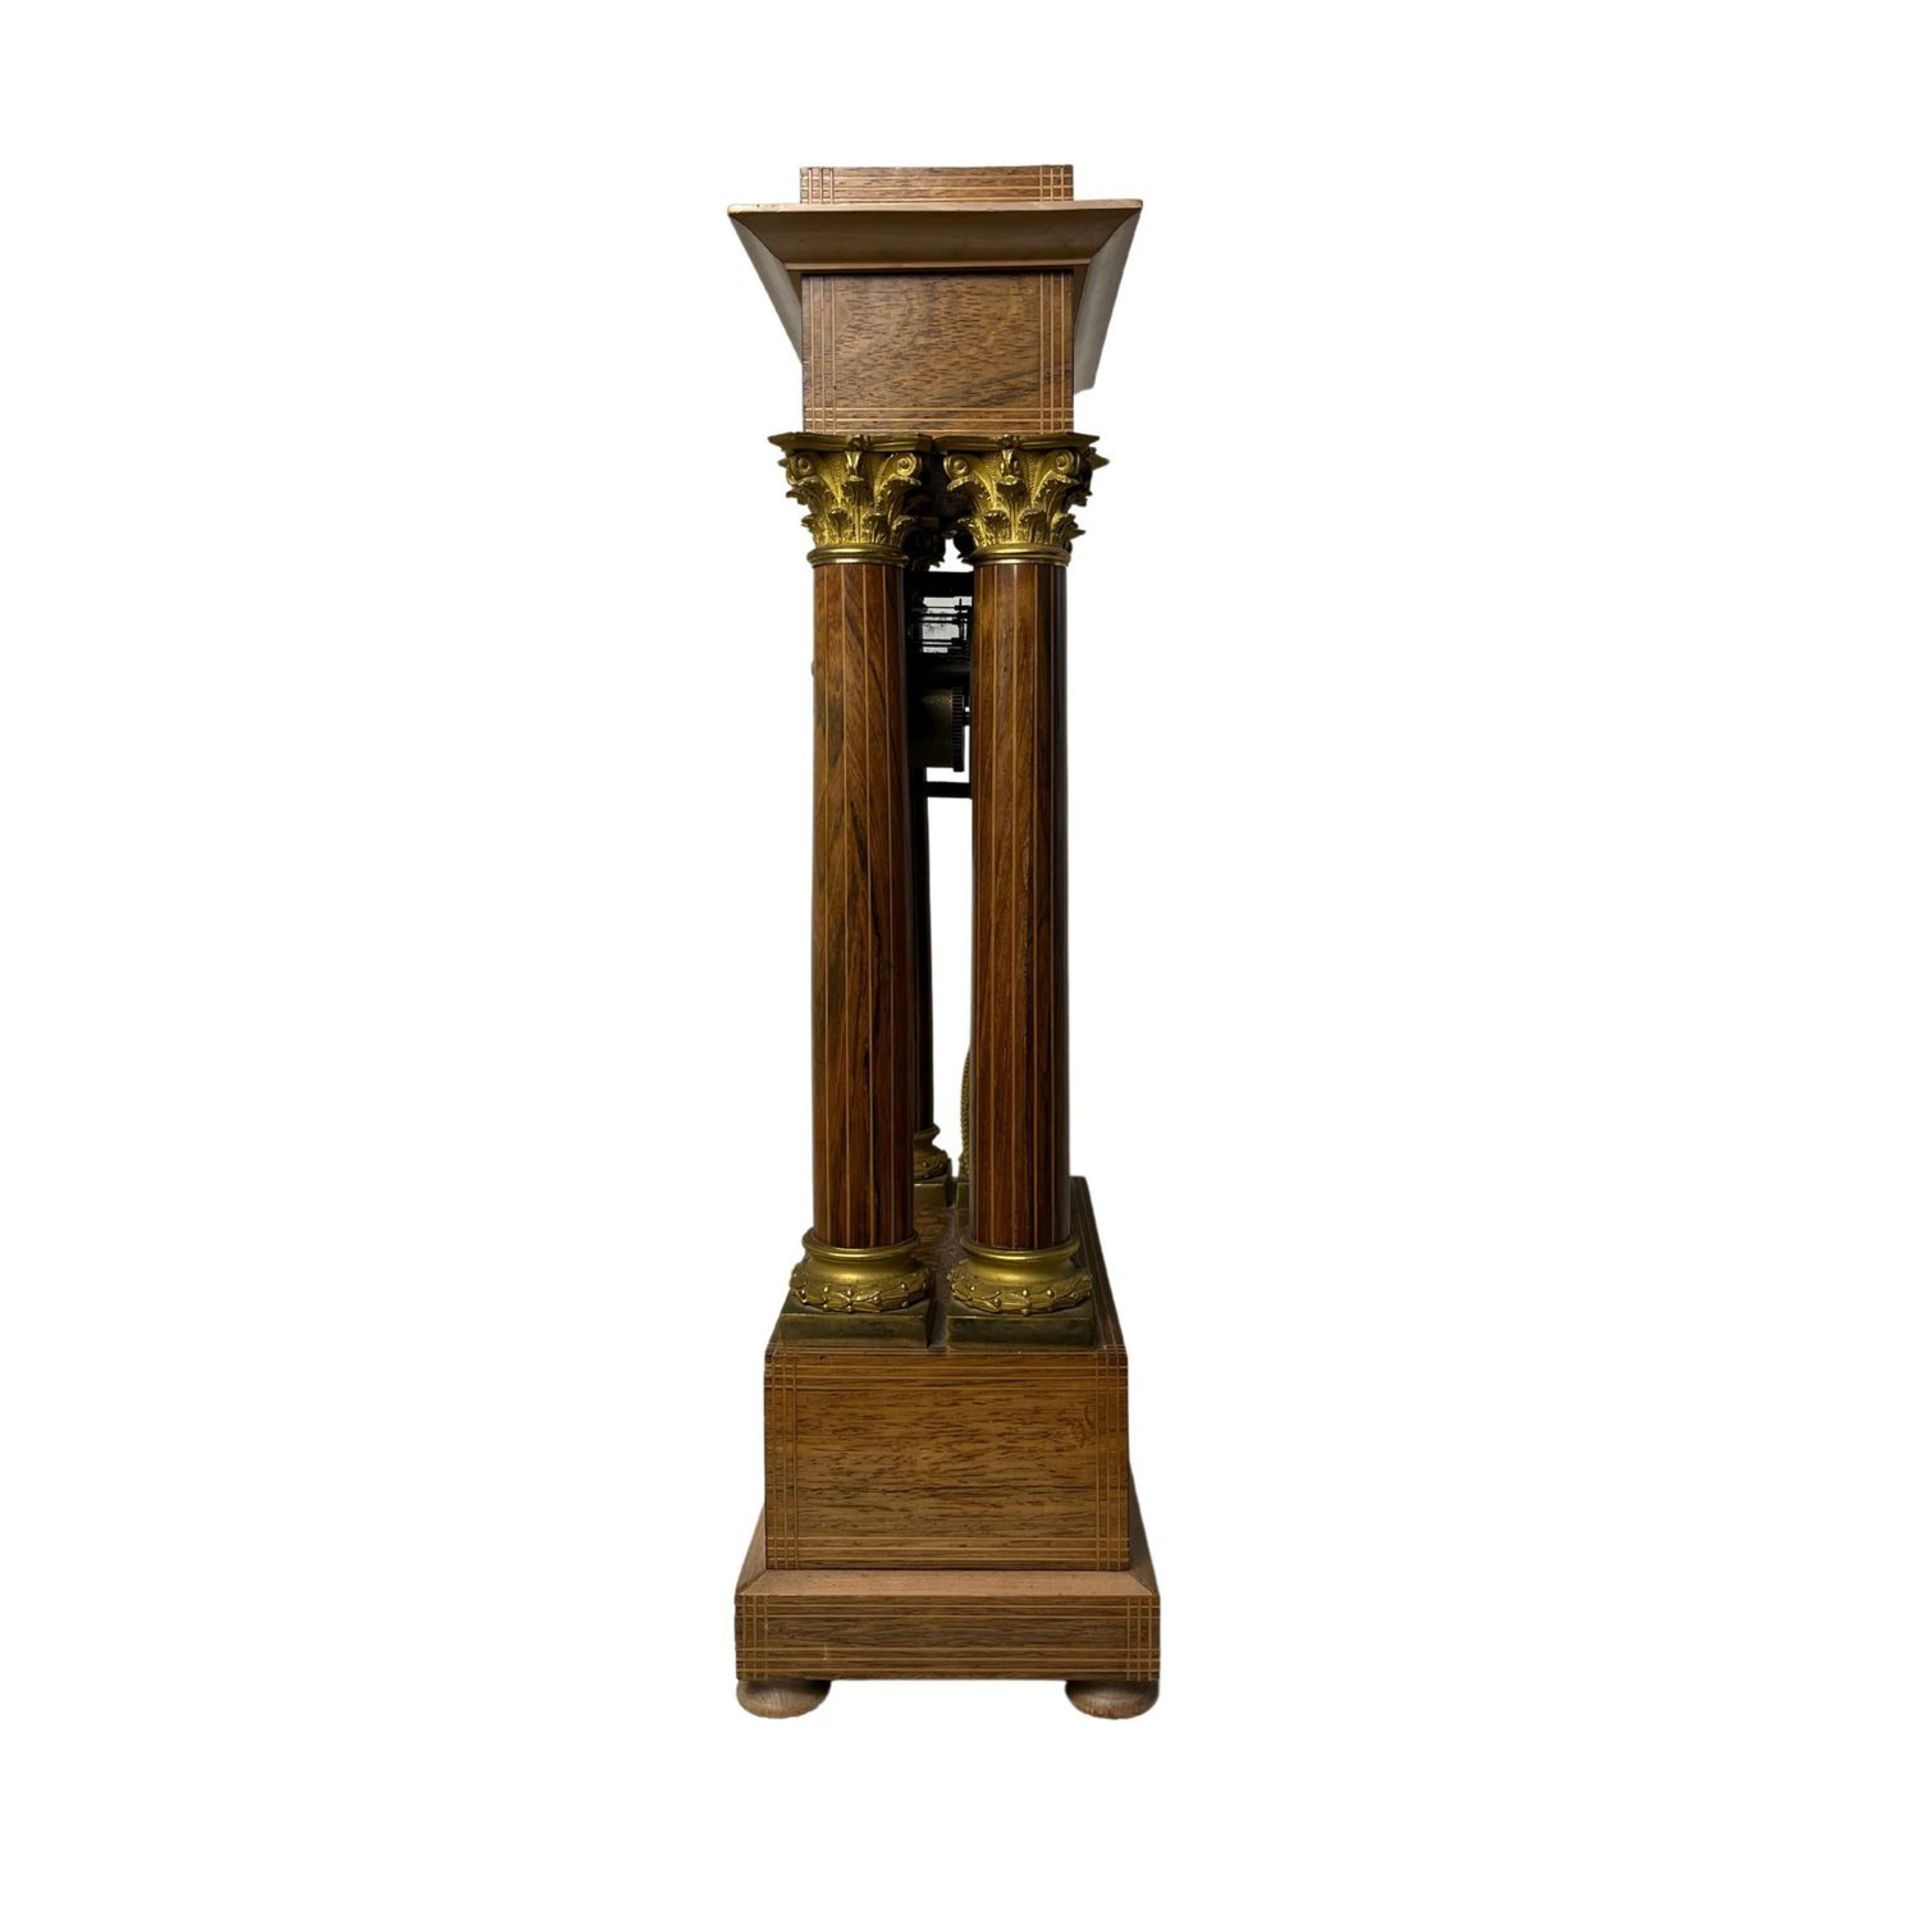 Pendulum clock - Image 2 of 4